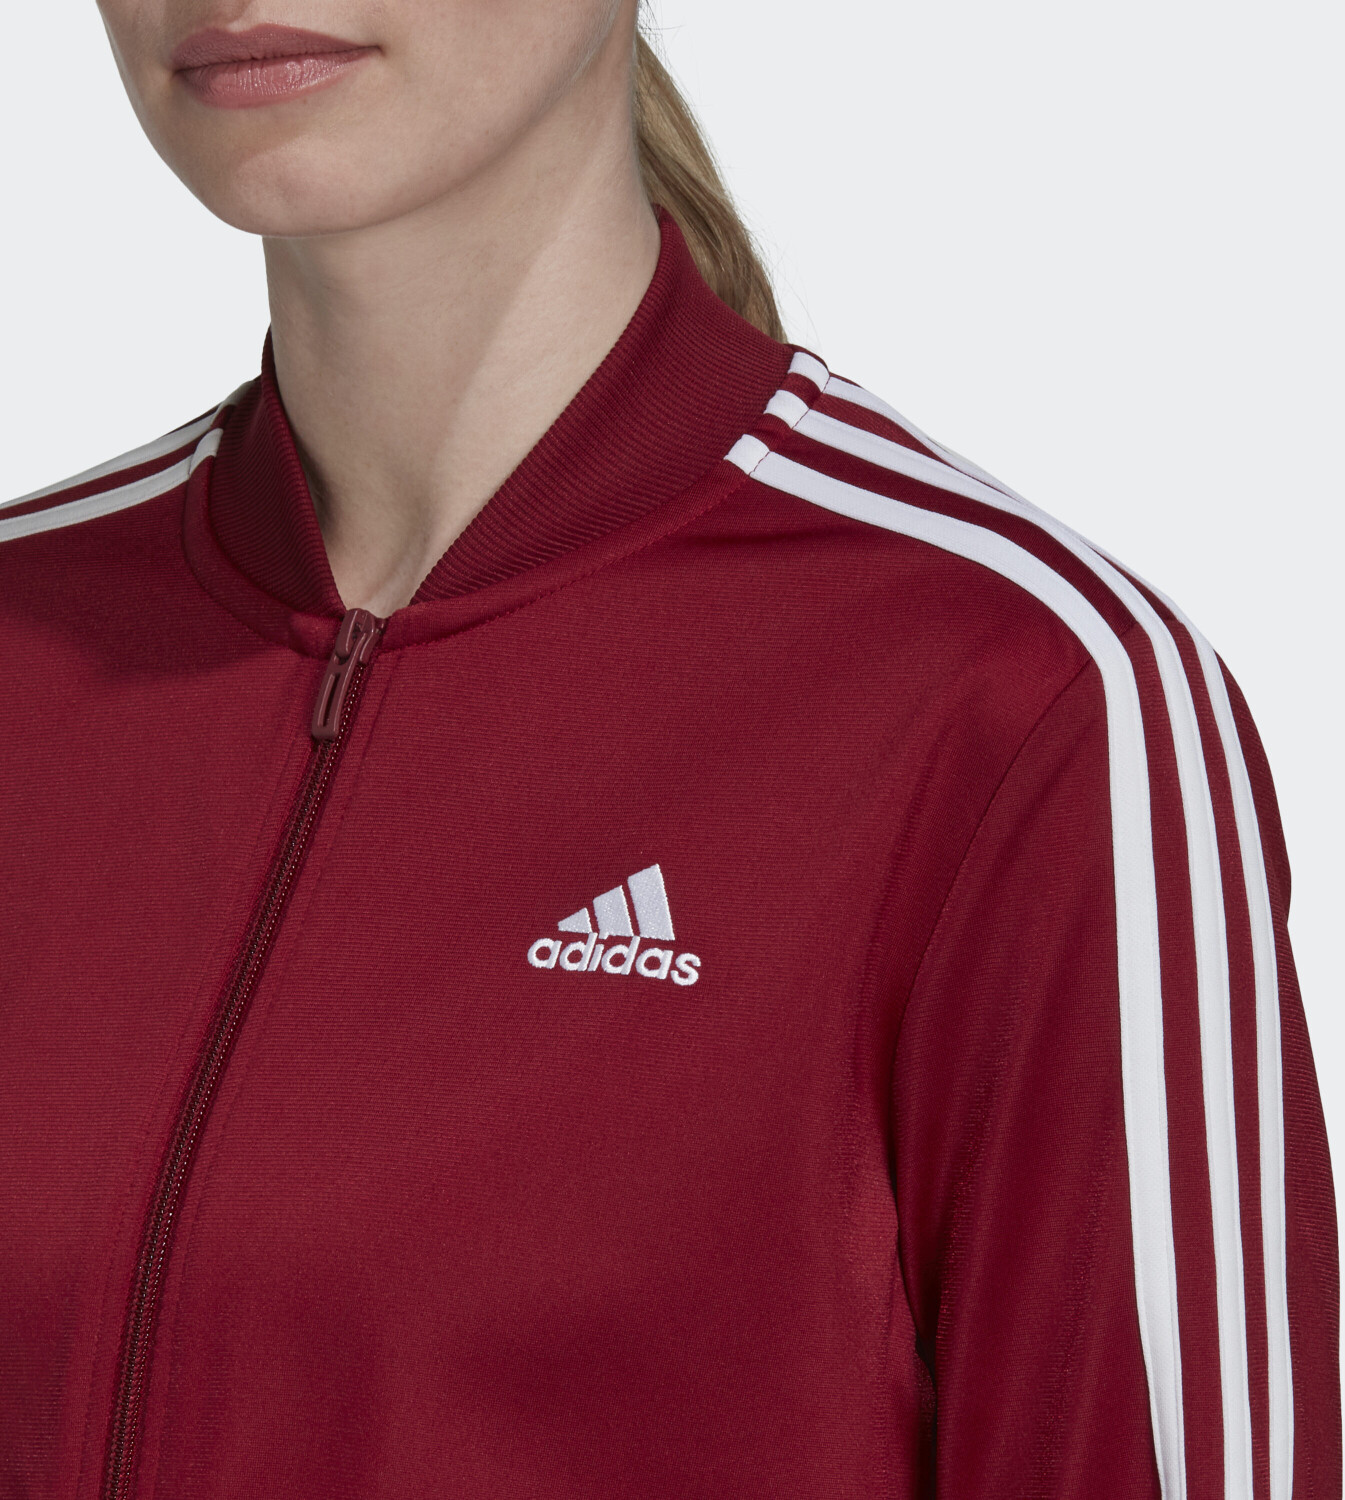 Adidas Essentials burgundy € Women | Tracksuit ab legend 3-Stripes Preisvergleich ink/collegiate 45,59 bei